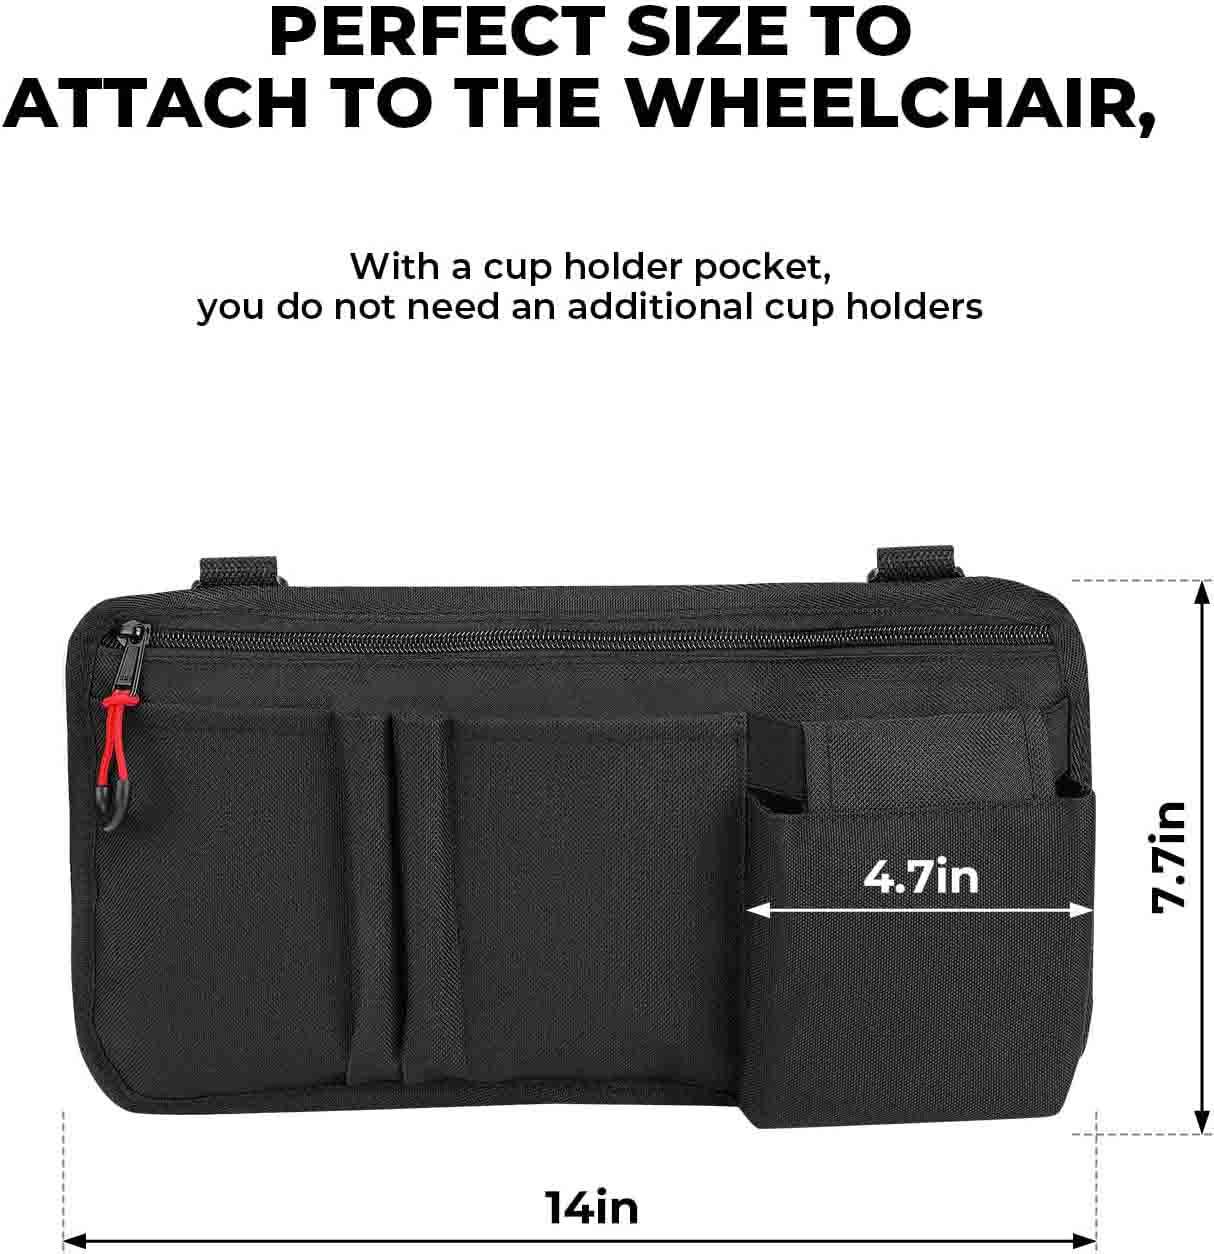 Hochwertige Walker-Tasche mit mehreren Aufbewahrungstaschen. Leichter Organizer für medizinische Stühle. Wasserdichte Rollstuhl-Seitentaschen